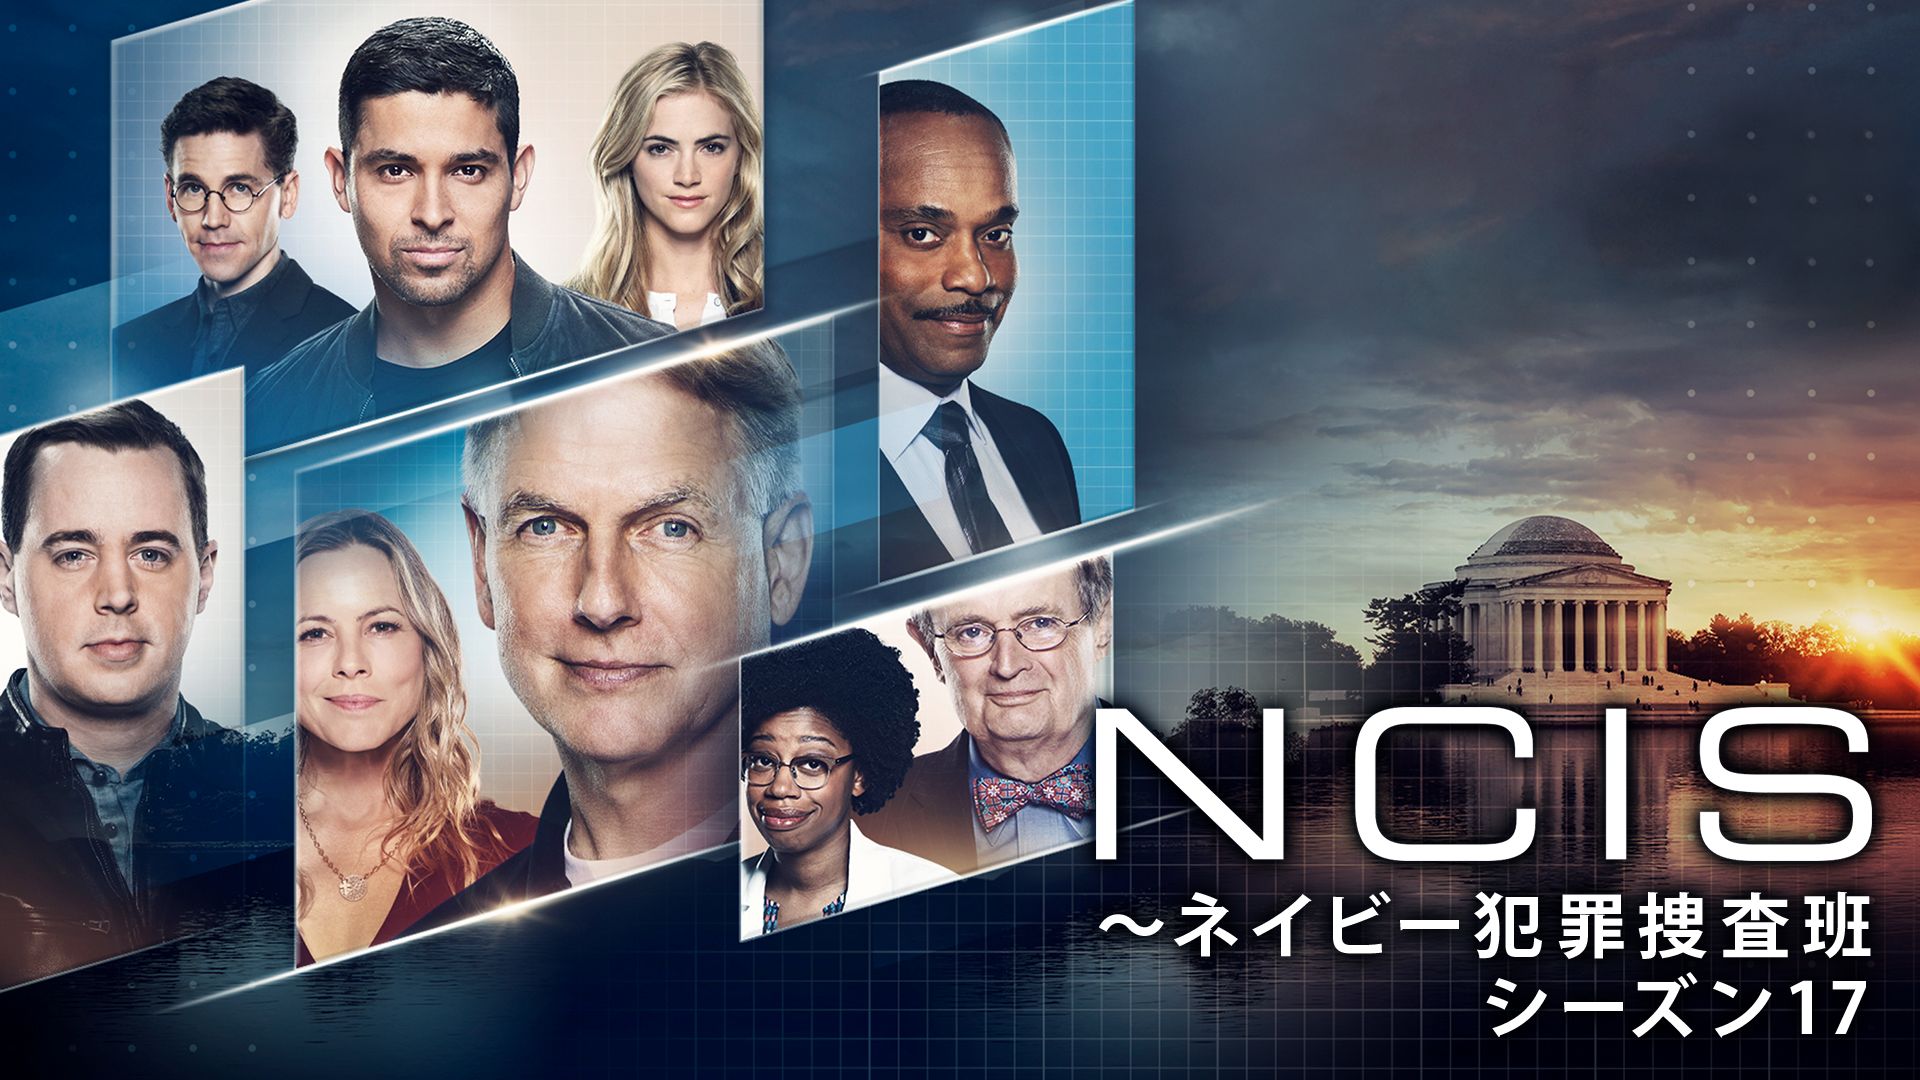 Ncis ネイビー犯罪捜査班 シーズン17 の海外ドラマ無料動画を全話 1話 最終回 配信しているサービスはここ 日本語吹き替え版 字幕版で見れるのは 動画作品を探すならaukana